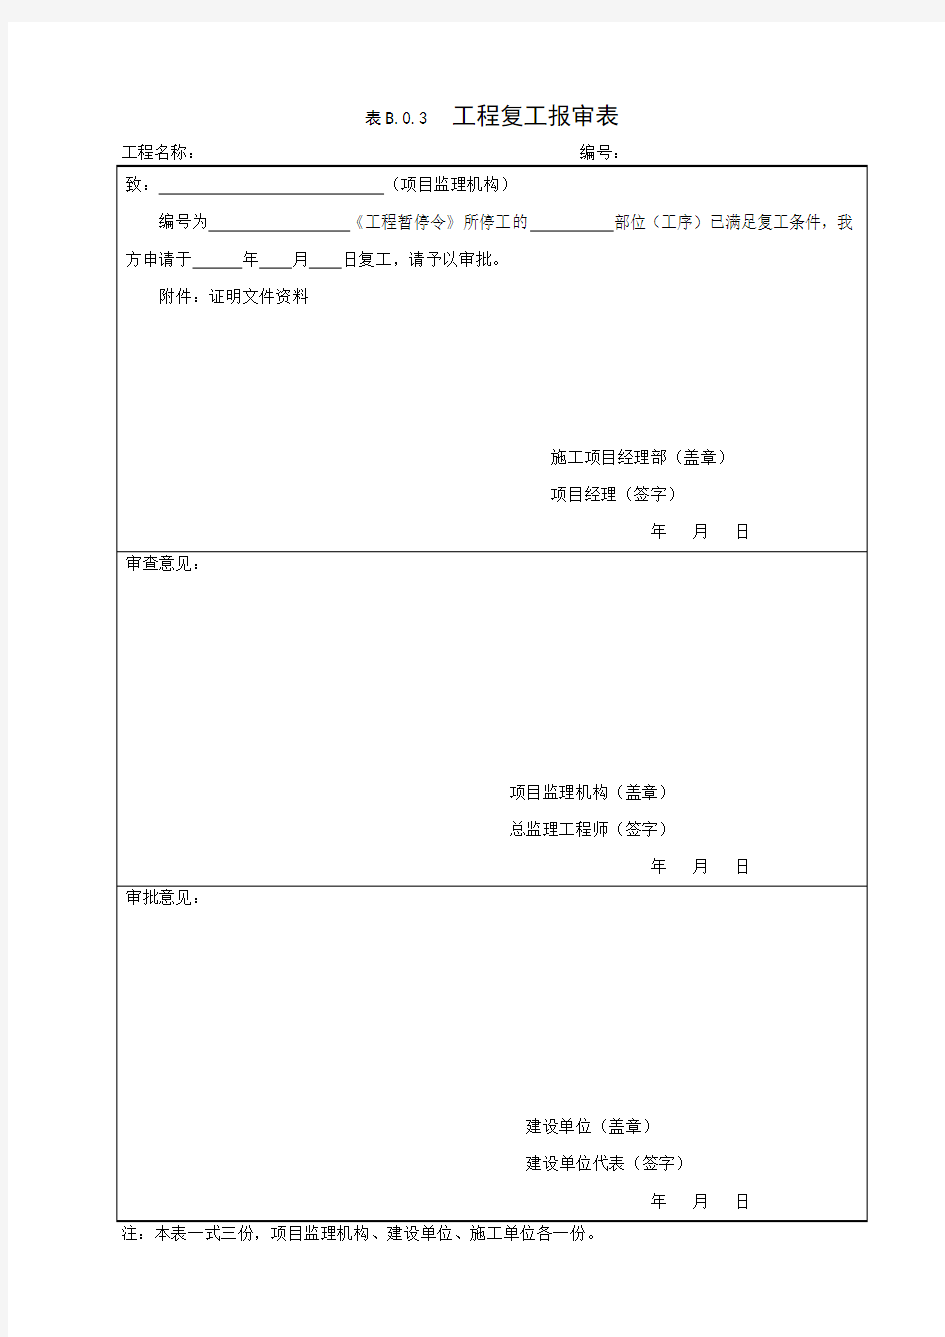 工程复工报审表 GB50319-2013